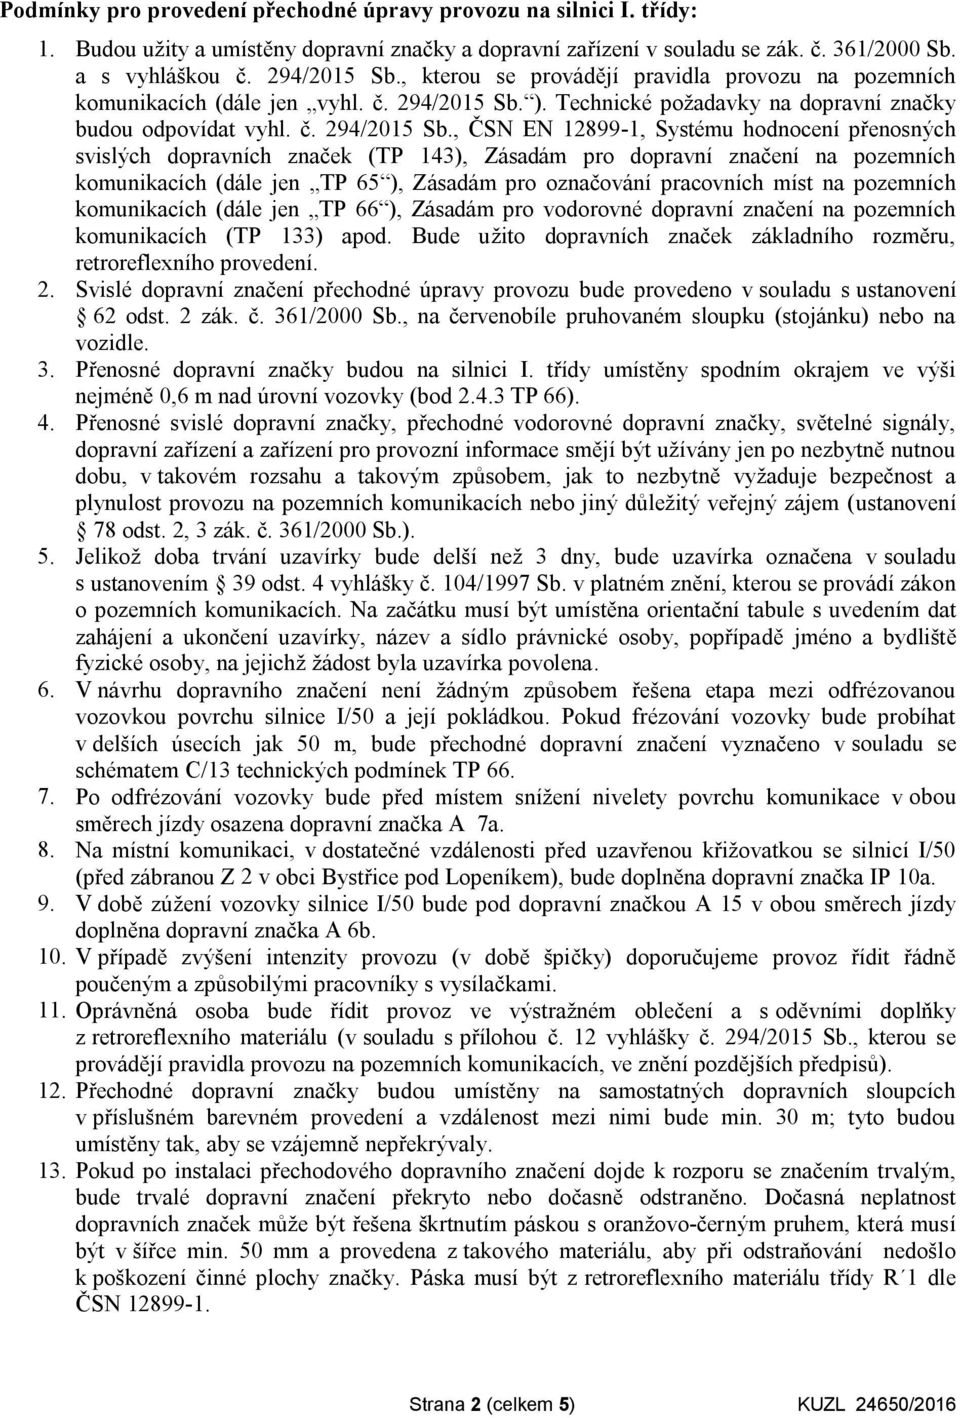 ). Technické požadavky na dopravní značky budou odpovídat vyhl. č. 294/2015 Sb.